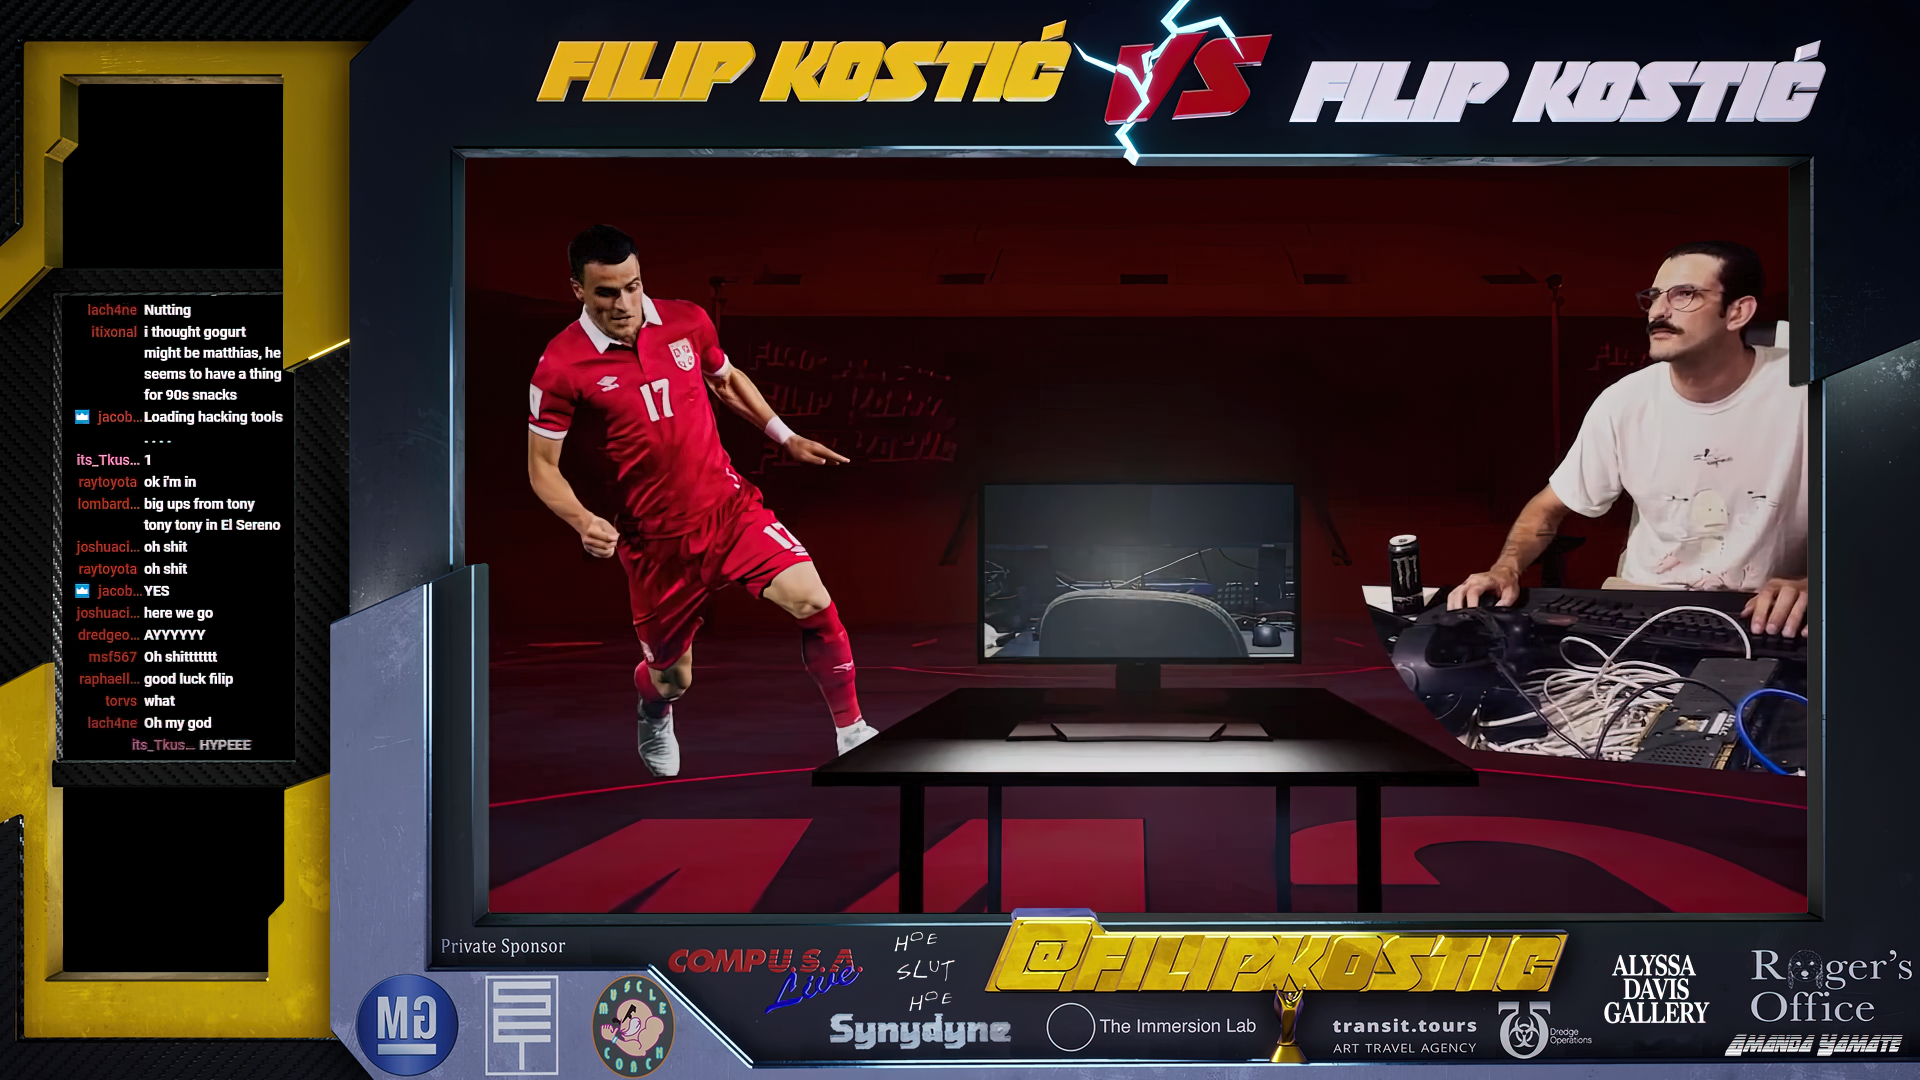   Filip Kostic,  Filip Kostic VS Filip Kostic  (2019)  